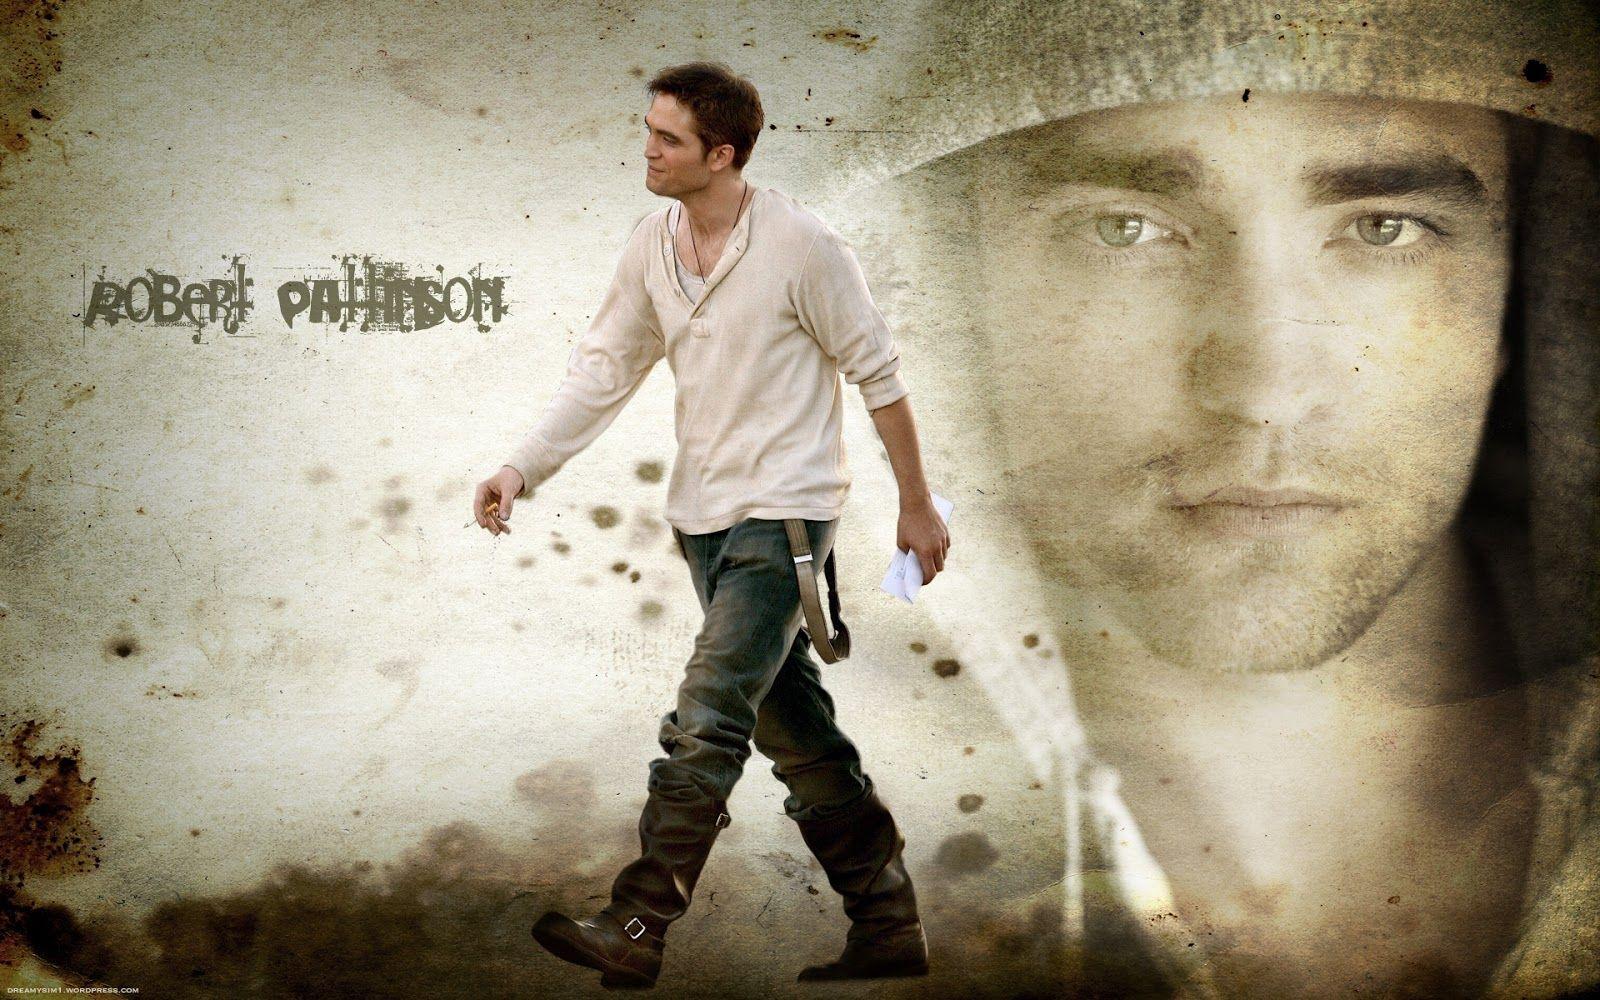 robert pattinson wallpaper. Robert Pattinson HD Wallpaper. HD